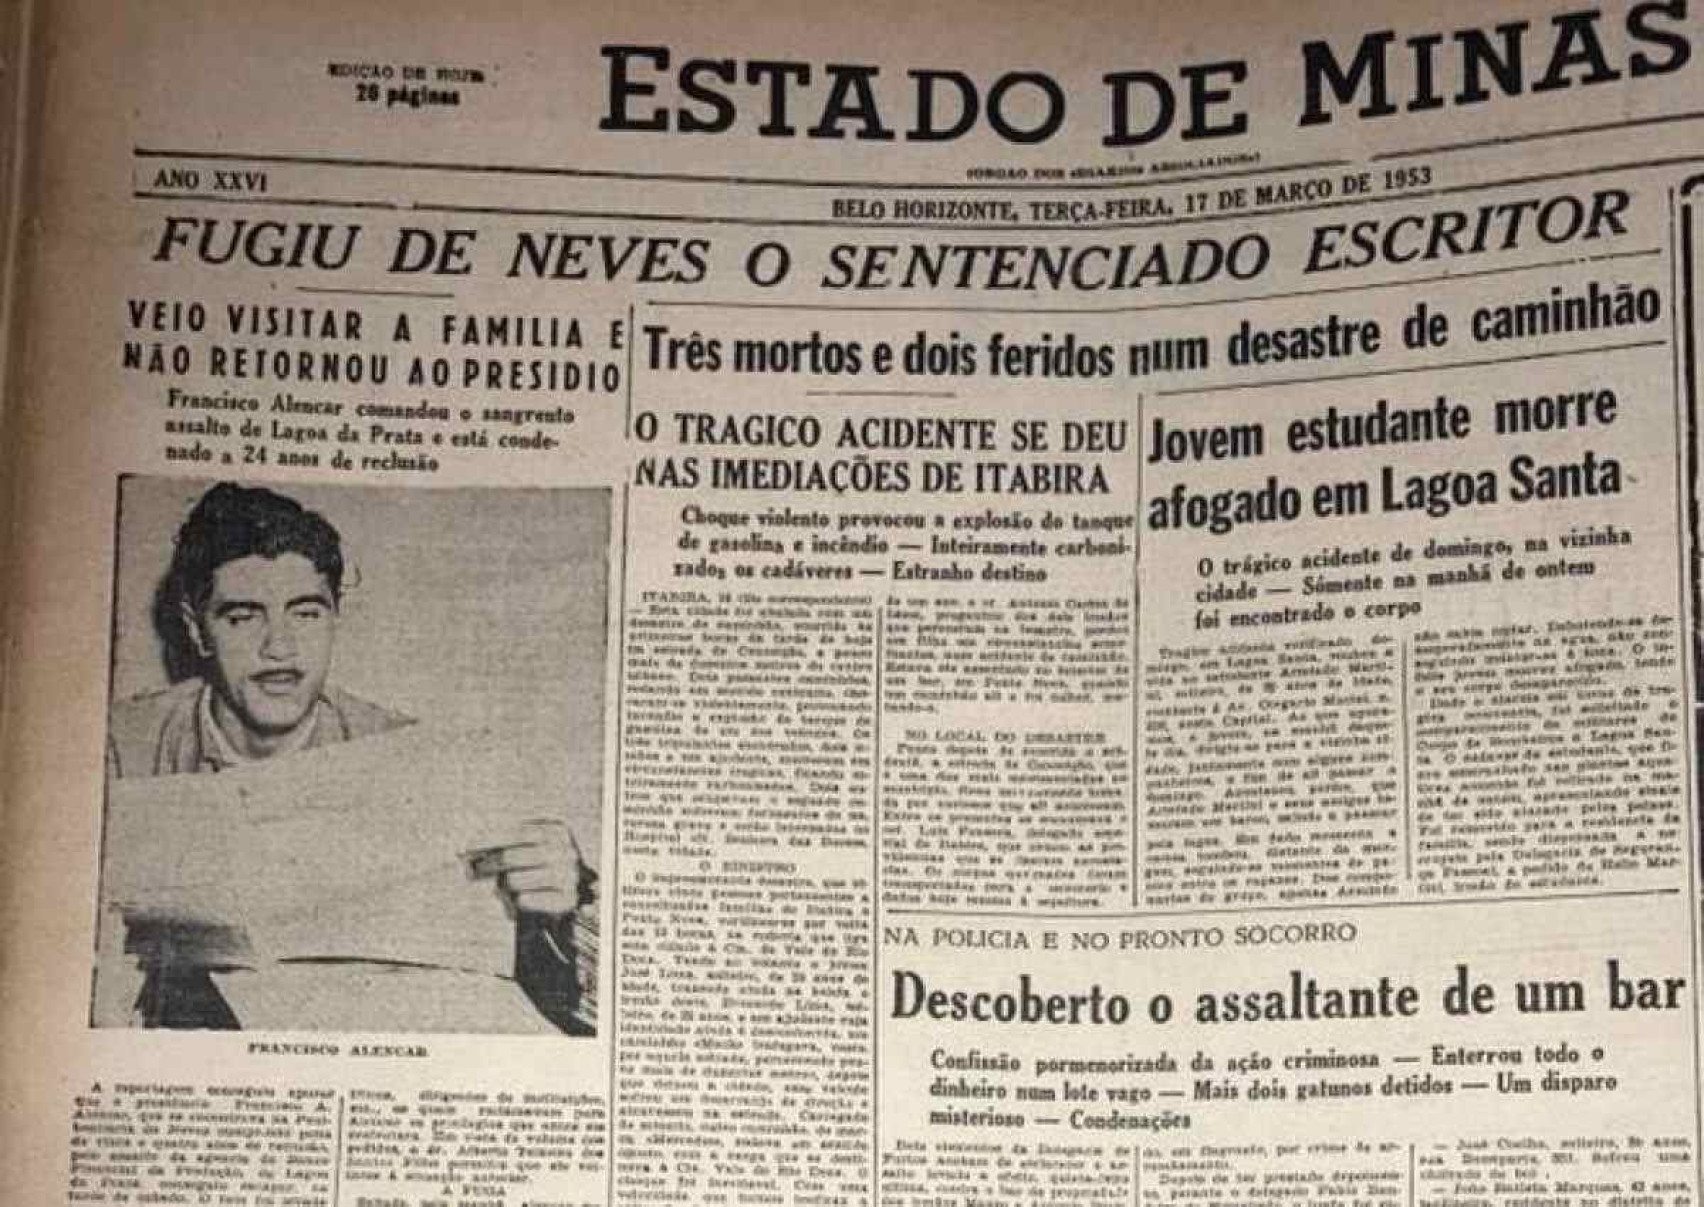 Em março de 1953, o detento-escritor resolveu fugir da cadeia e fazer uma pequena tour pela América do Sul